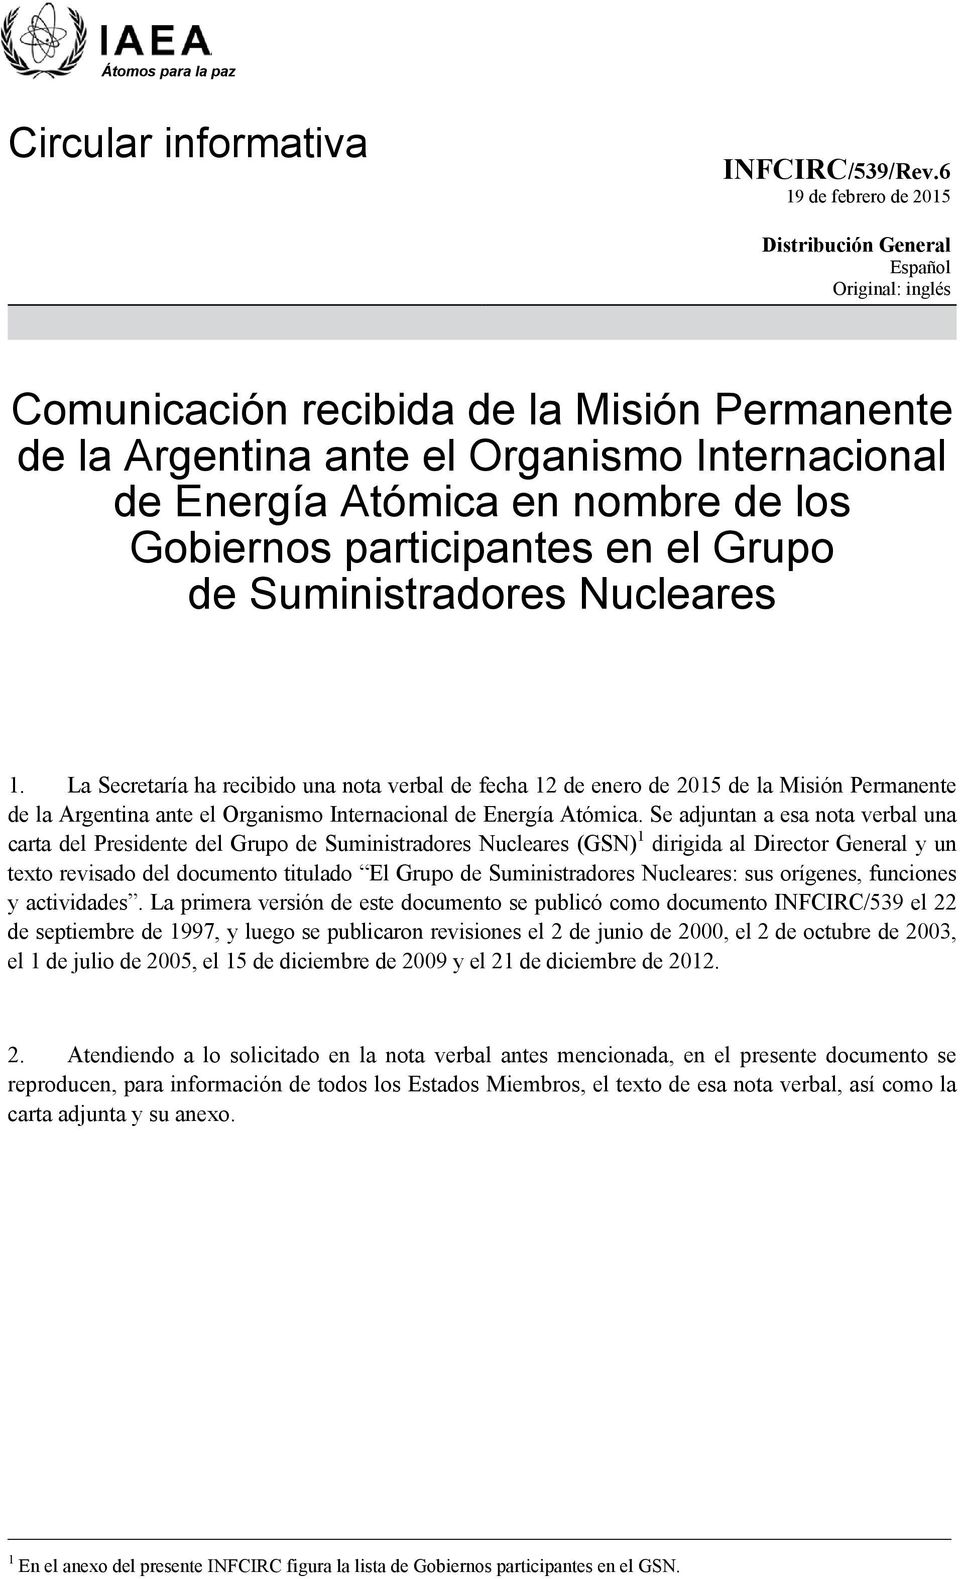 La Secretaría ha recibido una nota verbal de fecha 12 de enero de 2015 de la Misión Permanente de la Argentina ante el Organismo Internacional de Energía Atómica.